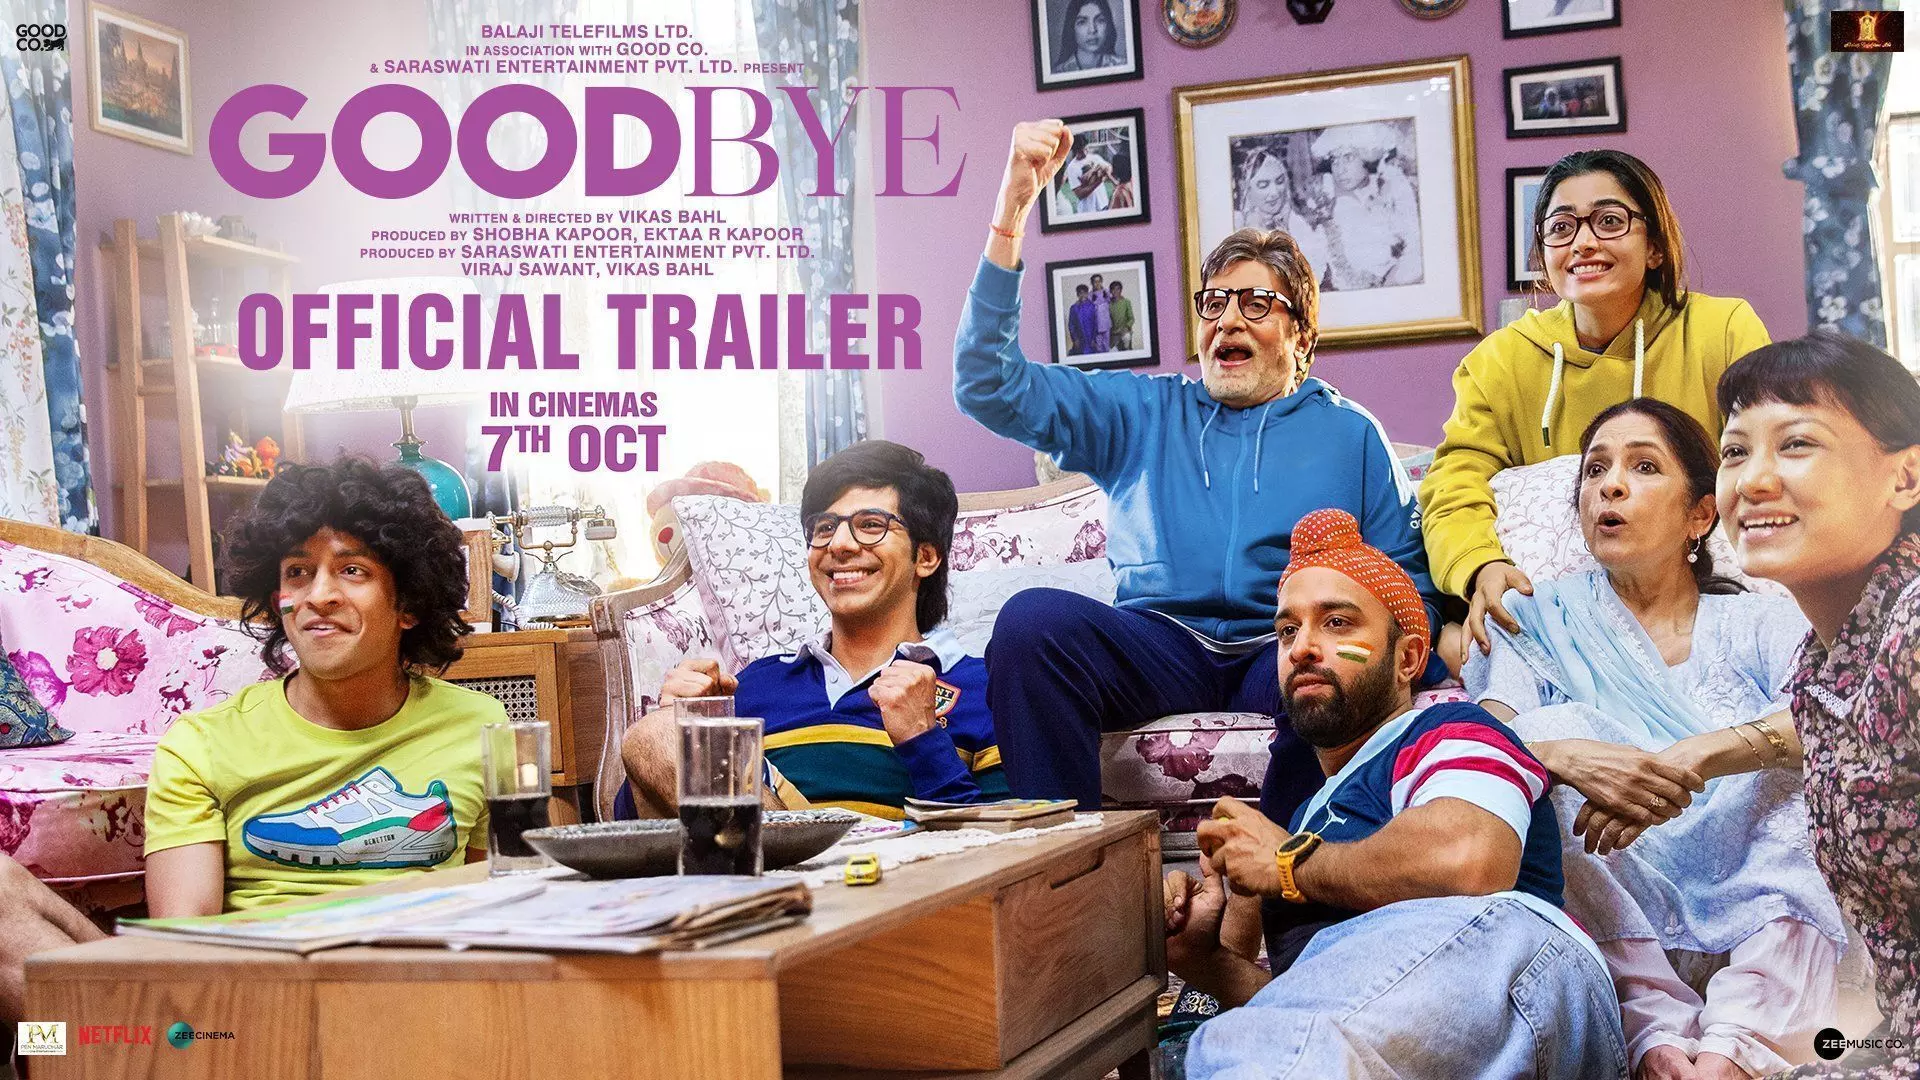 Goodbye Trailer : रुलाएगा भी हंसाएगा भी गुडबाय का ट्रेलर, छा गए अमिताभ बच्चन-नीना गुप्ता और रश्मिका मंदाना